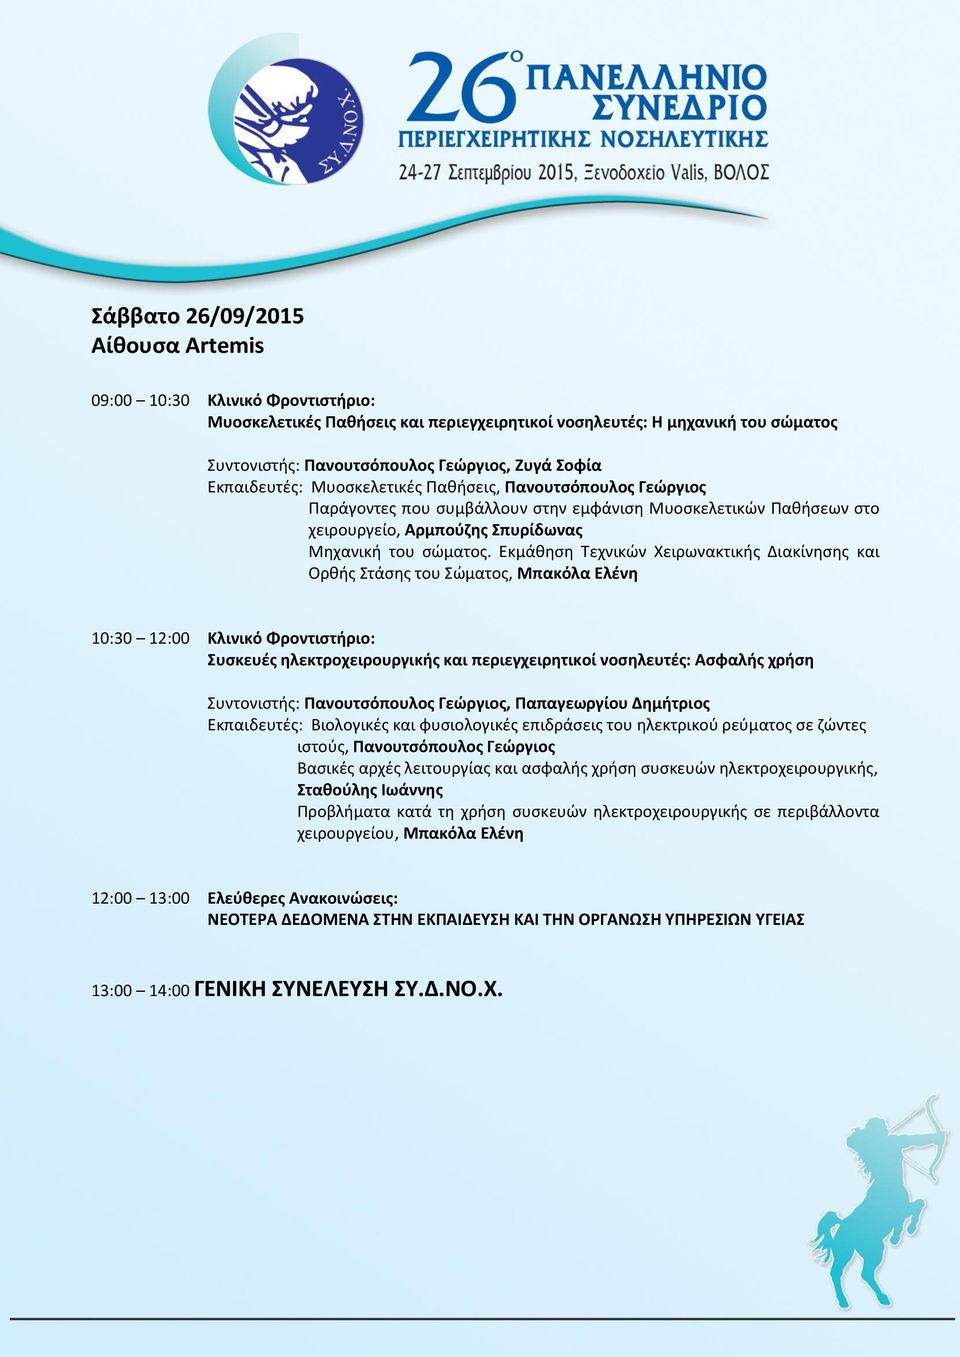 Εκμάθηση Τεχνικών Χειρωνακτικής Διακίνησης και Ορθής Στάσης του Σώματος, Μπακόλα Ελένη 10:30 12:00 Κλινικό Φροντιστήριο: Συσκευές ηλεκτροχειρουργικής και περιεγχειρητικοί νοσηλευτές: Ασφαλής χρήση